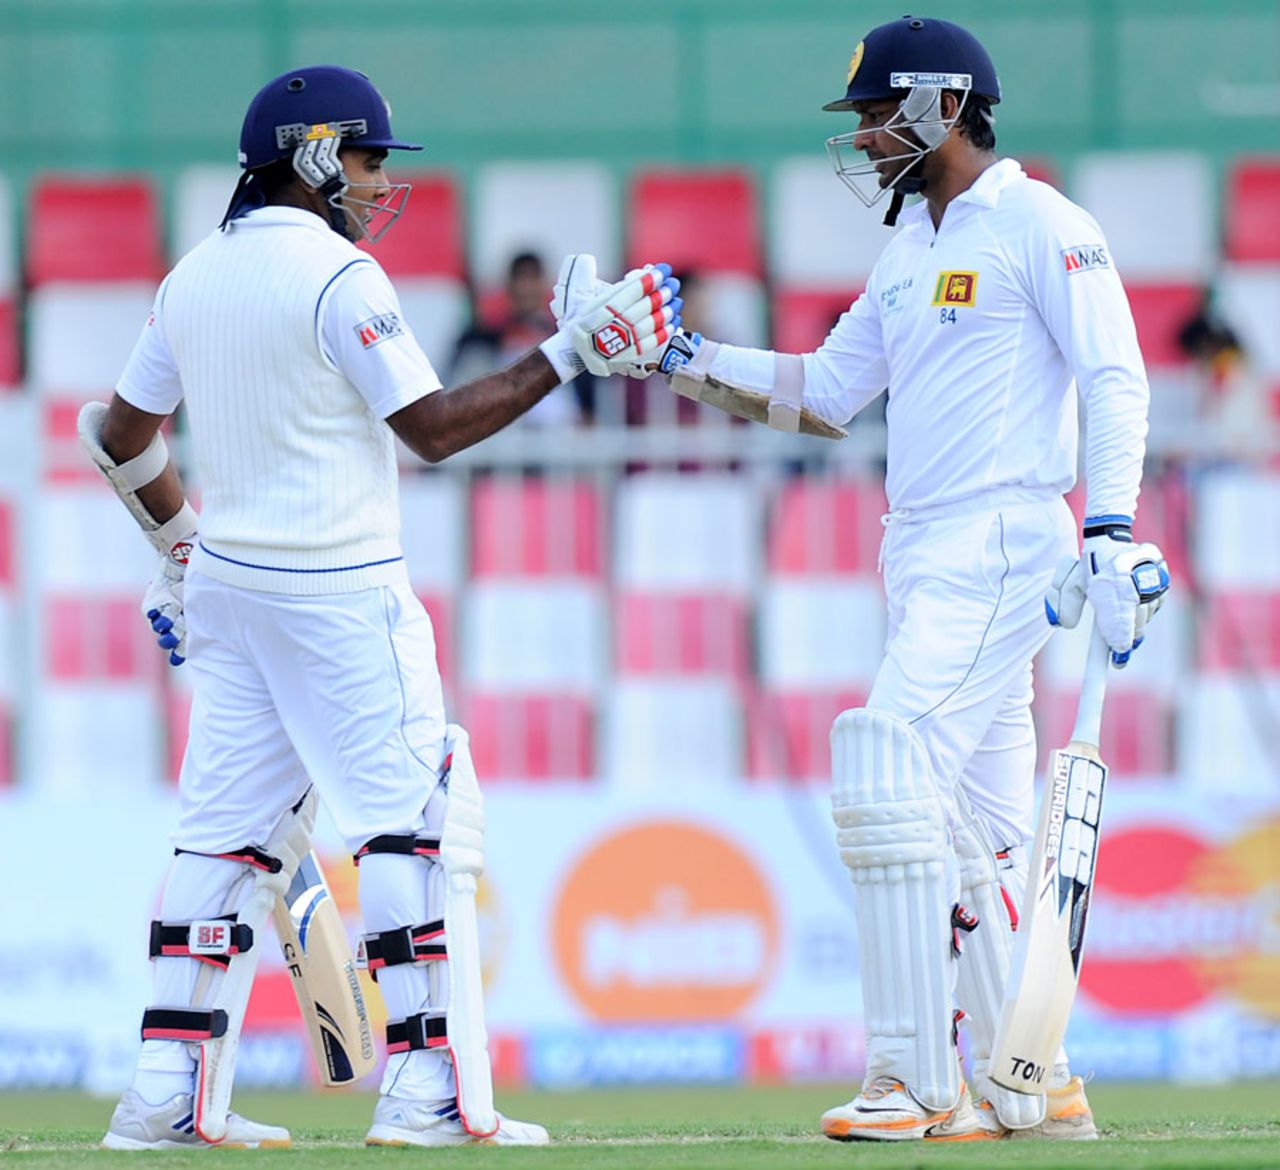 Kumar Sangakkara and Mahela Jayawardene punch gloves, Pakistan v Sri Lanka, 3rd Test, Sharjah, 1st day, January 16, 2014